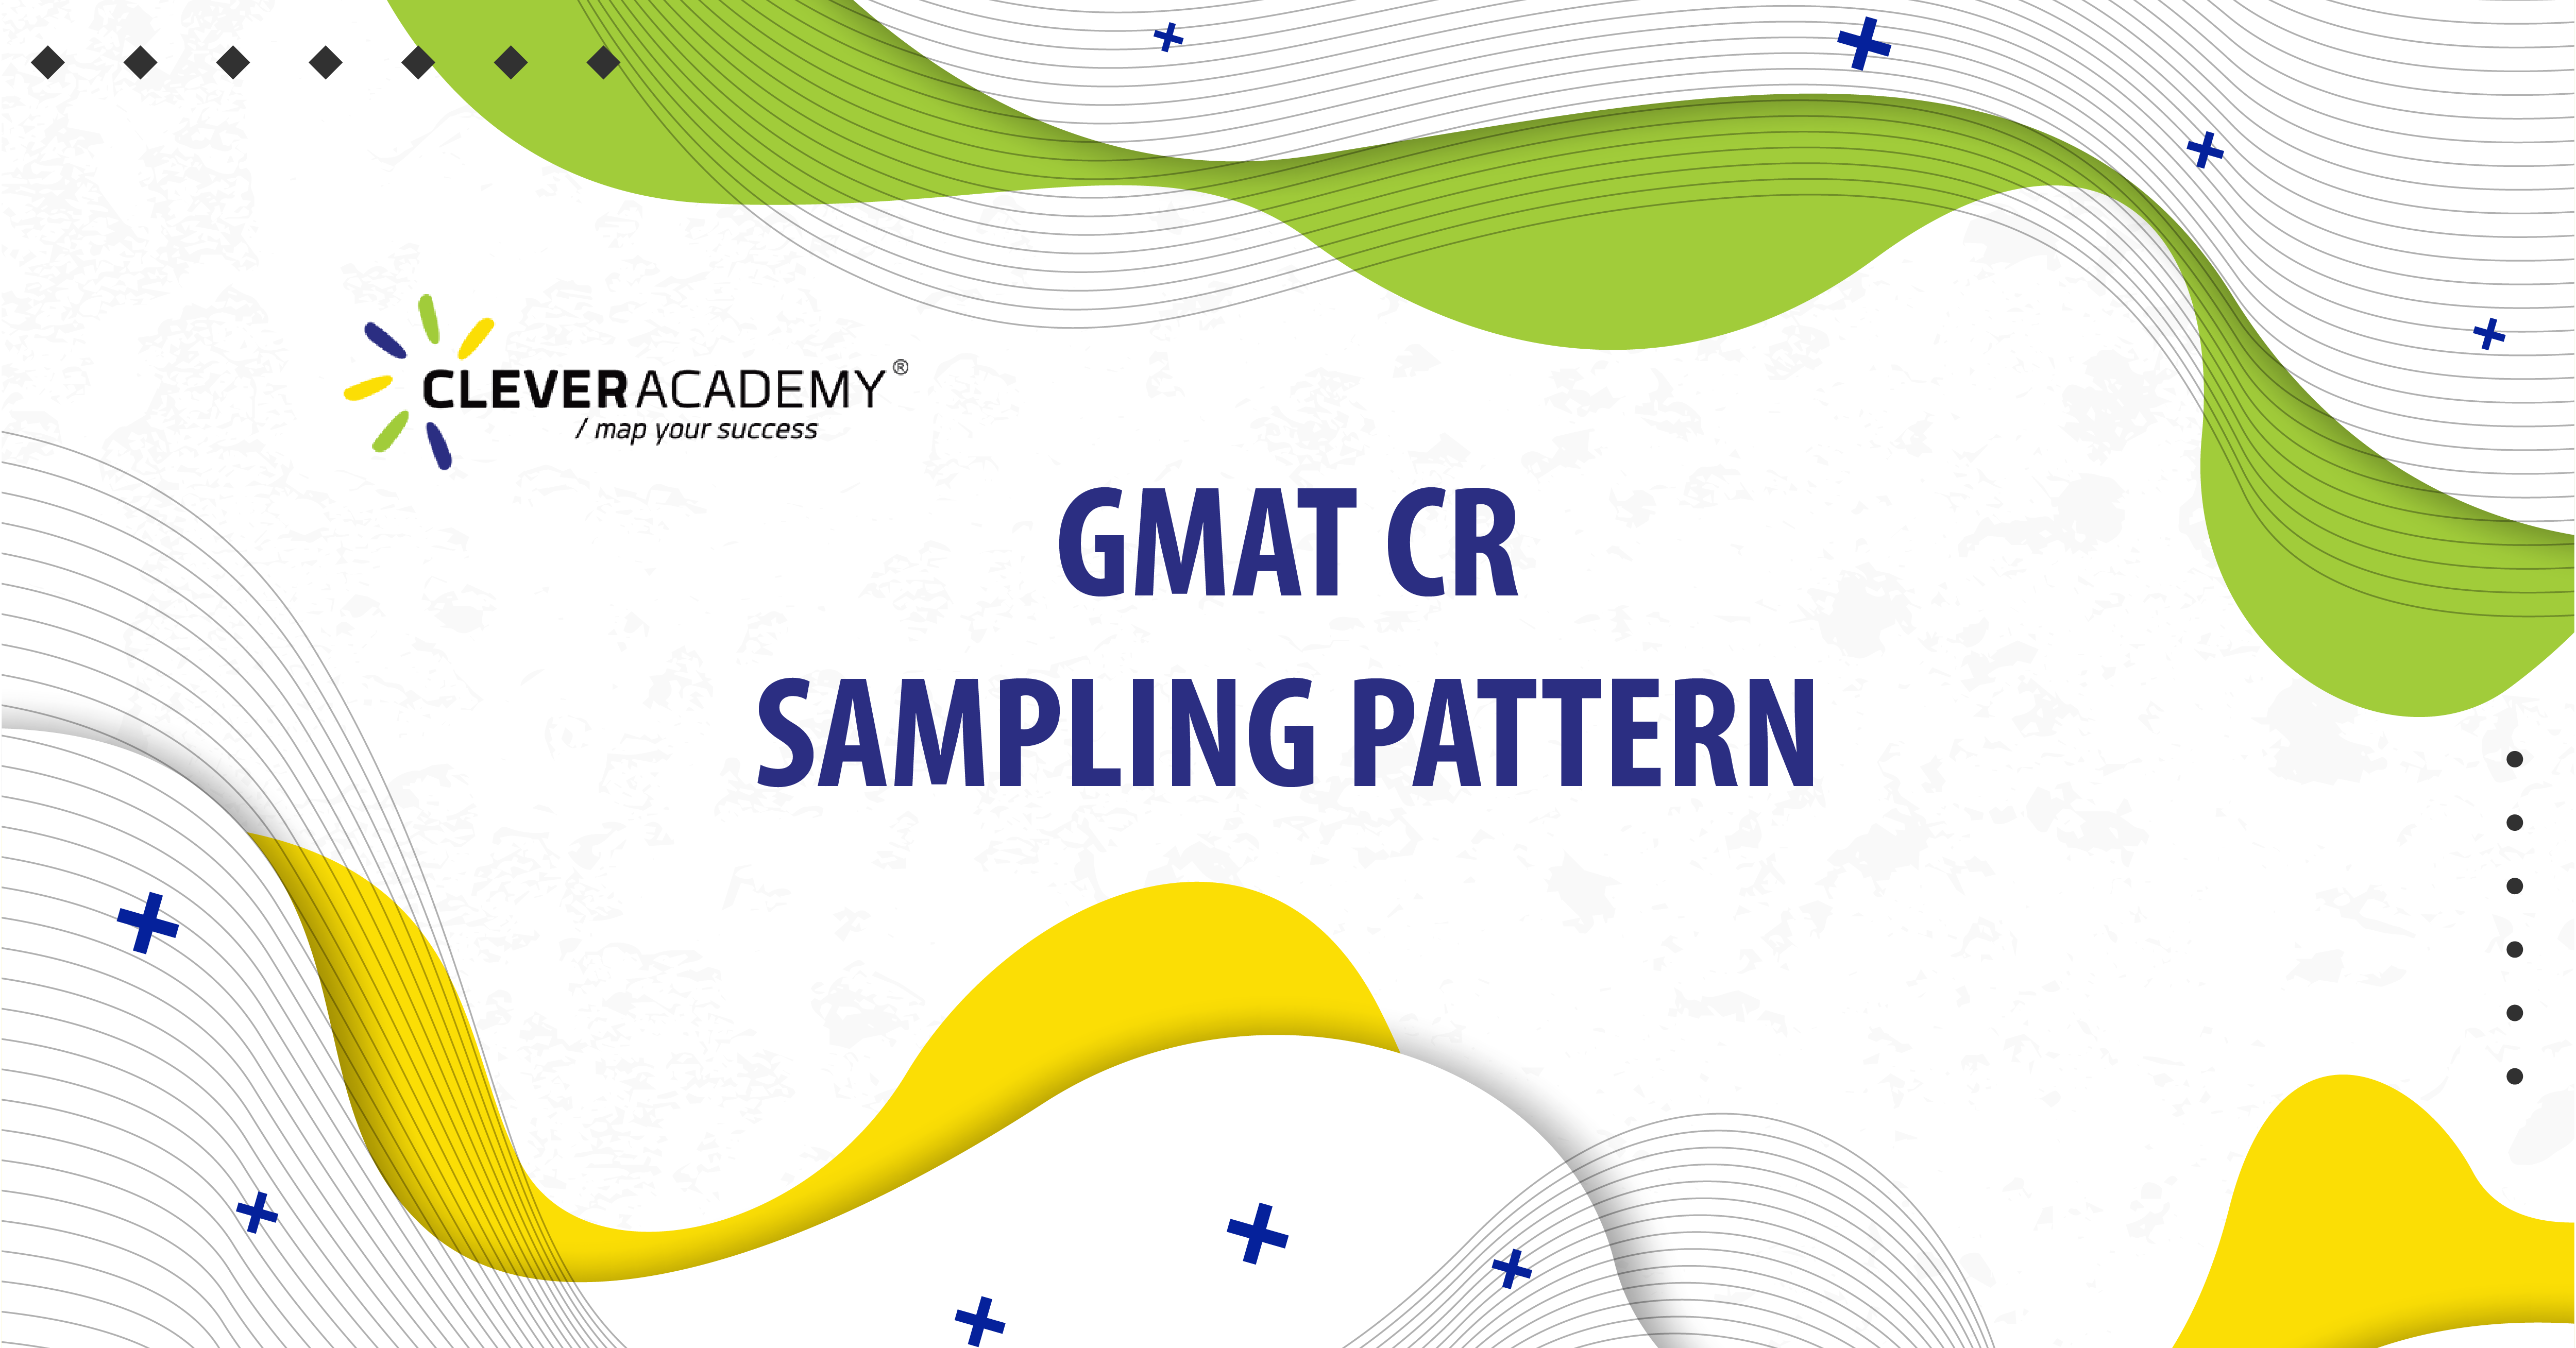 GMAT CR – SAMPLING PATTERN